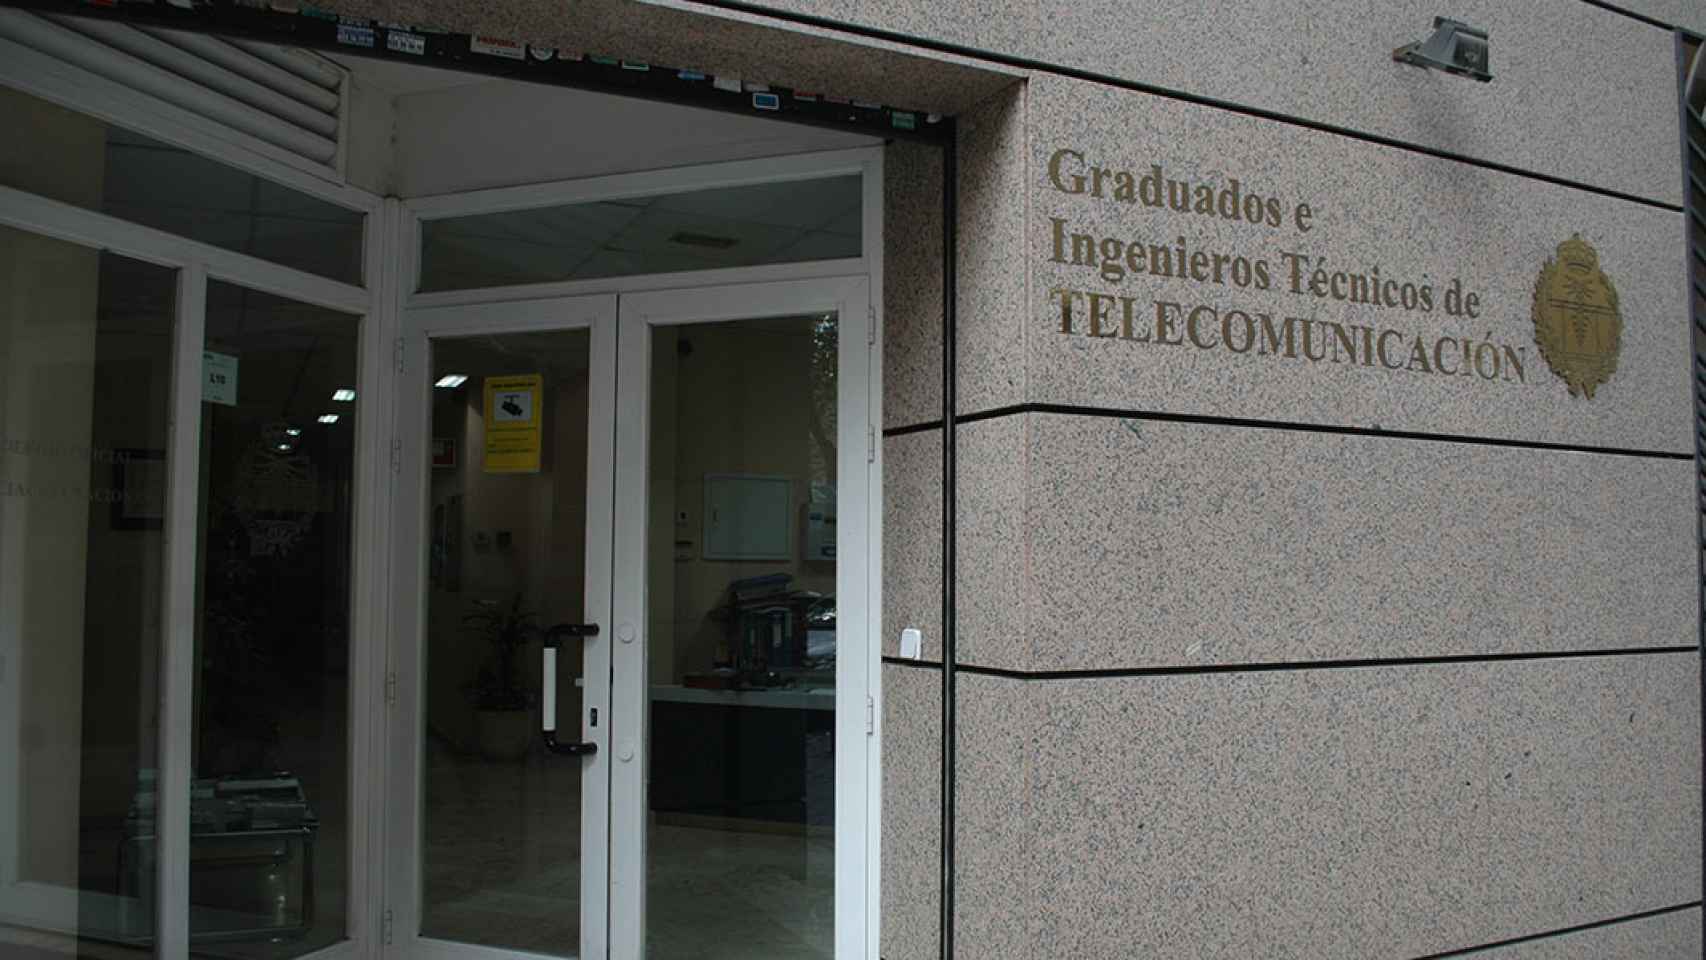 Fachada del Colegio de Ingenieros Técnicos de Telecomunicaciones.